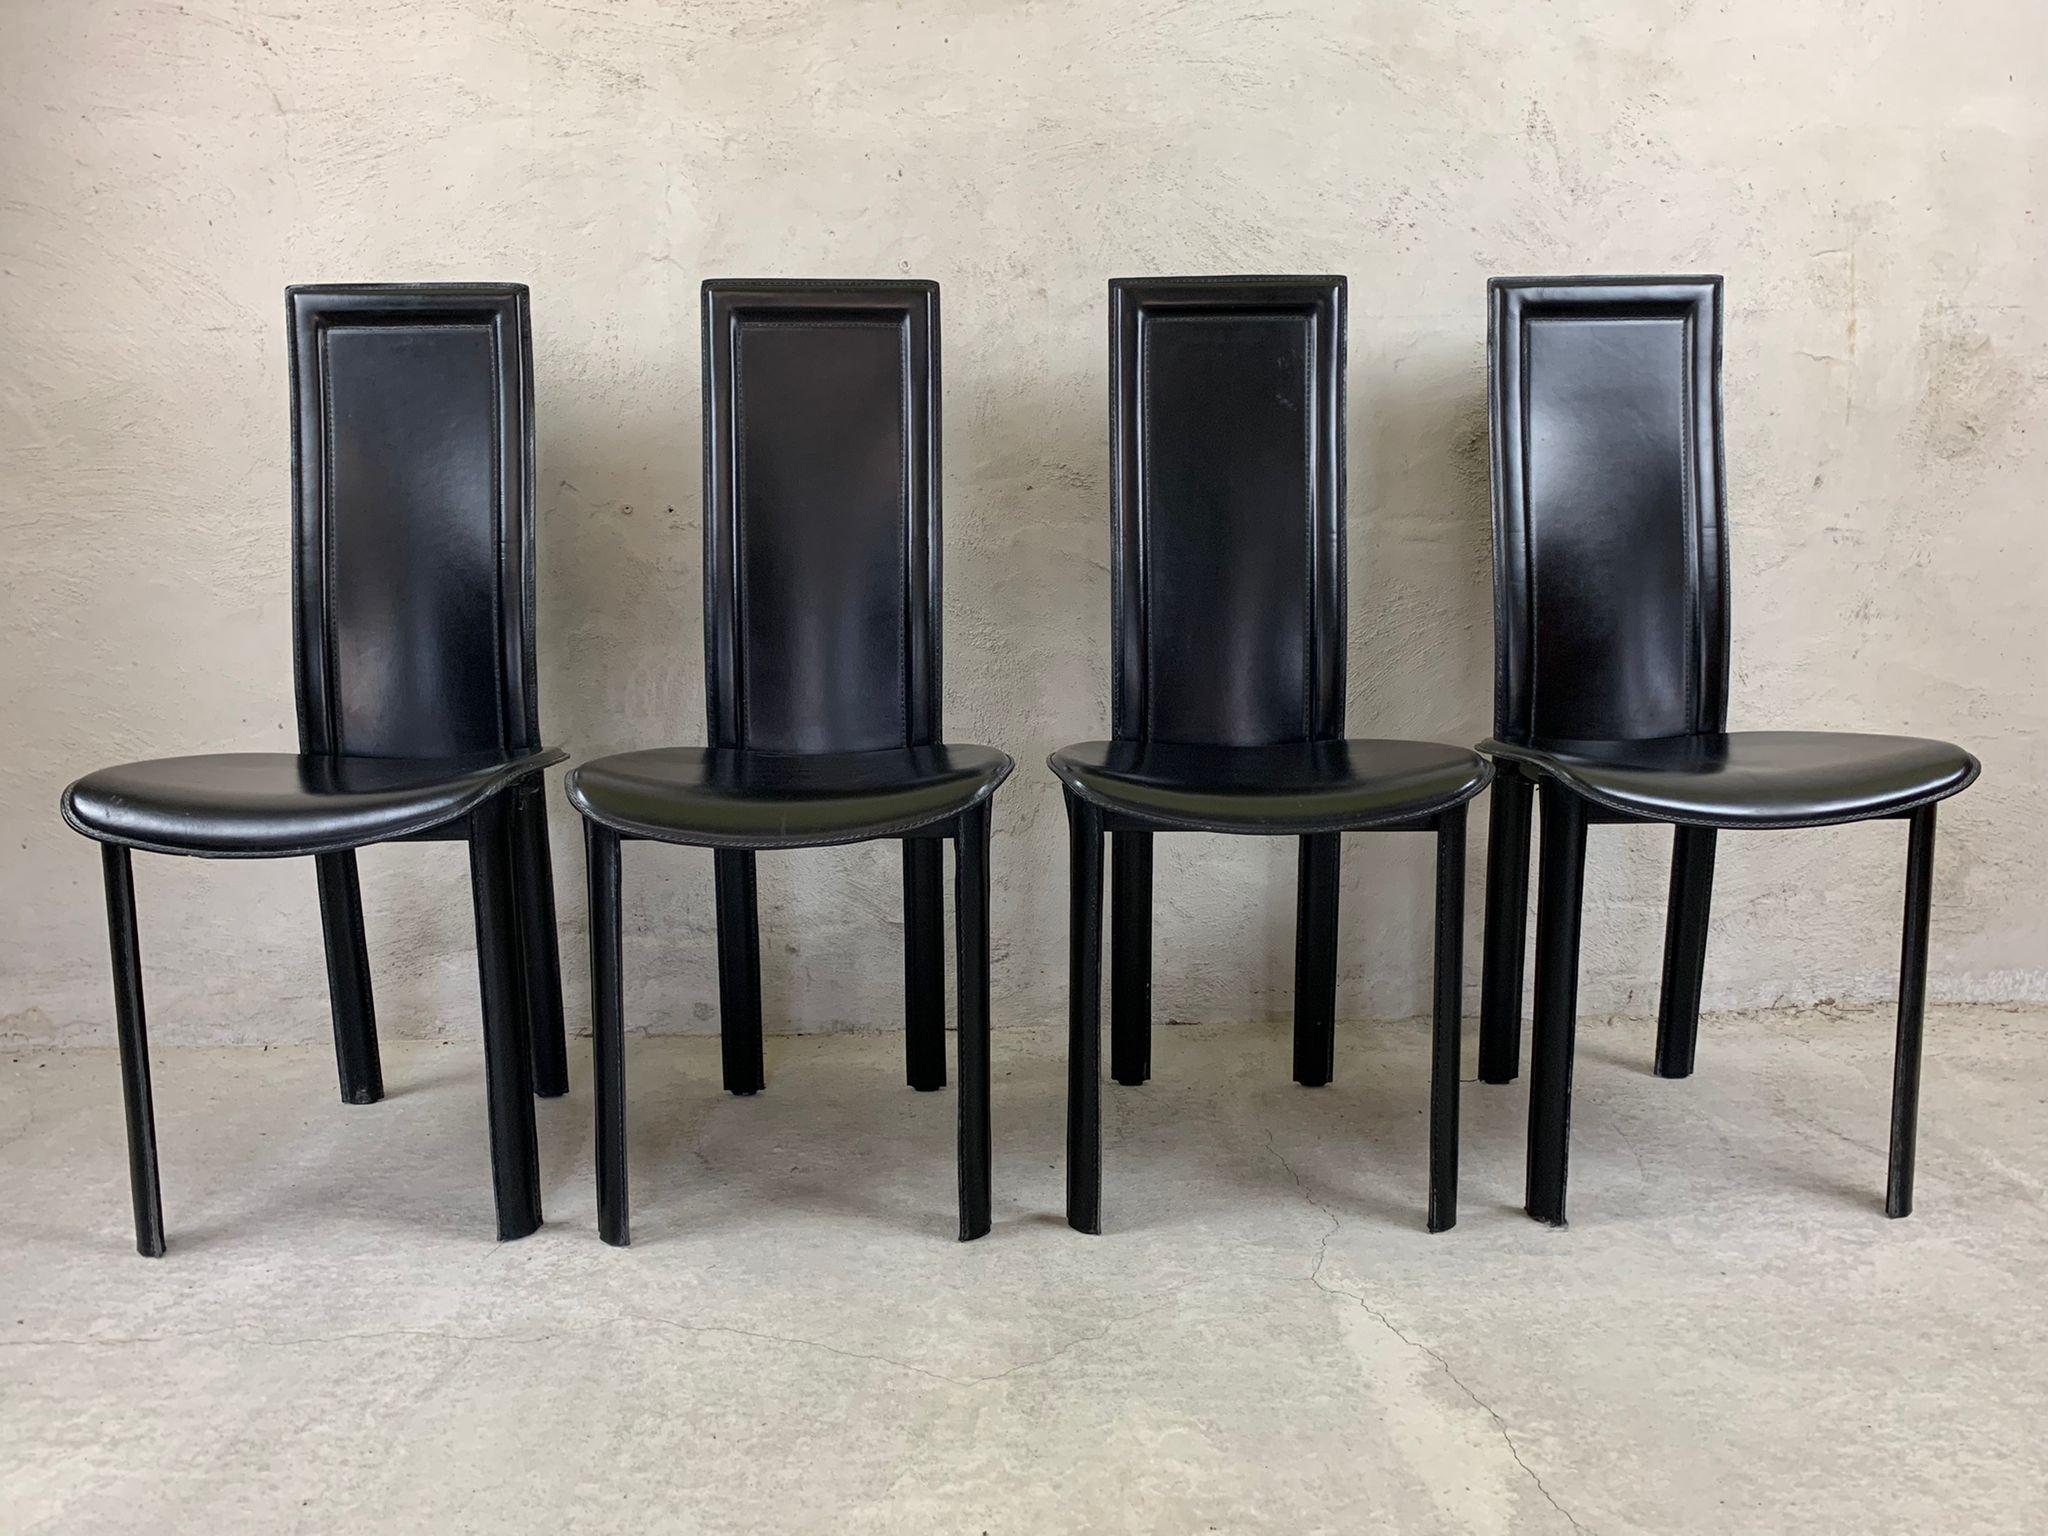 Ensemble de 8 chaises de salle à manger en cuir italien noir à haut dossier.

belle conception élégante et intemporelle.

Les chaises sont en bon état et présentent une usure minimale.

Années 1980 - Italie
